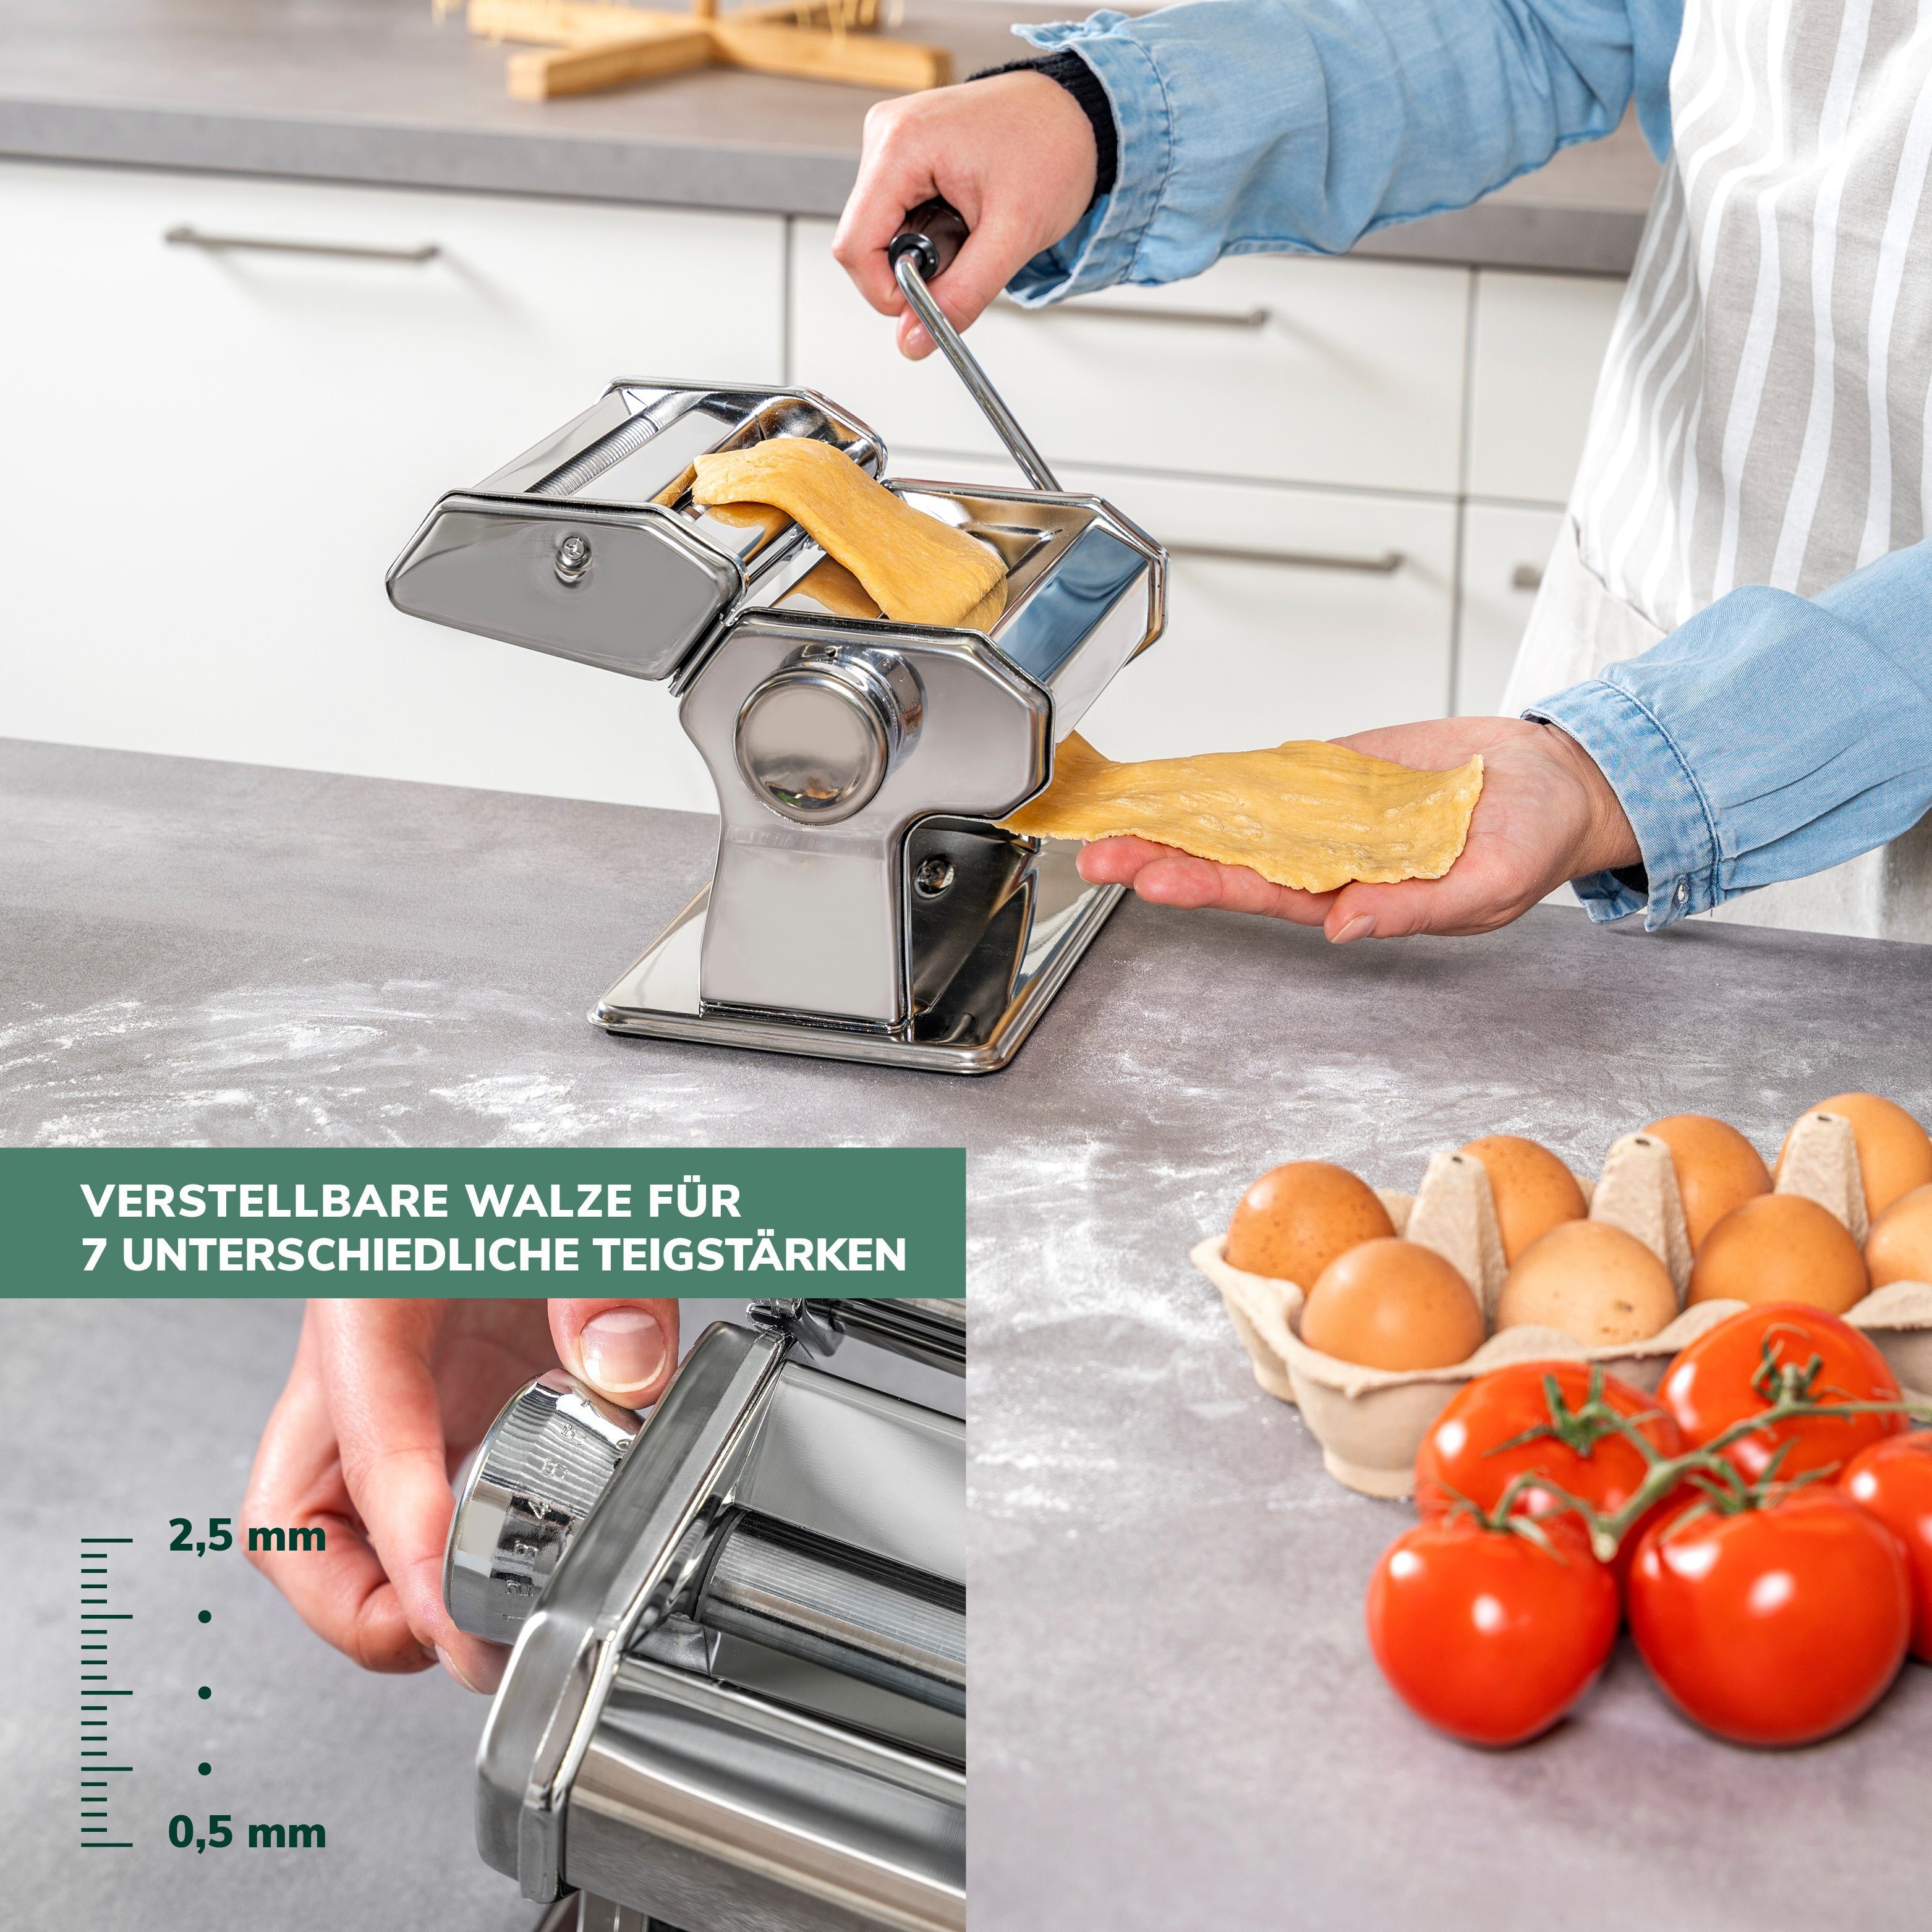 bremermann 7 Nudeltrocker Nudelmaschine Pasta Lasagne Stufen, Spaghetti, als inkl. und Set, Edelstahl für